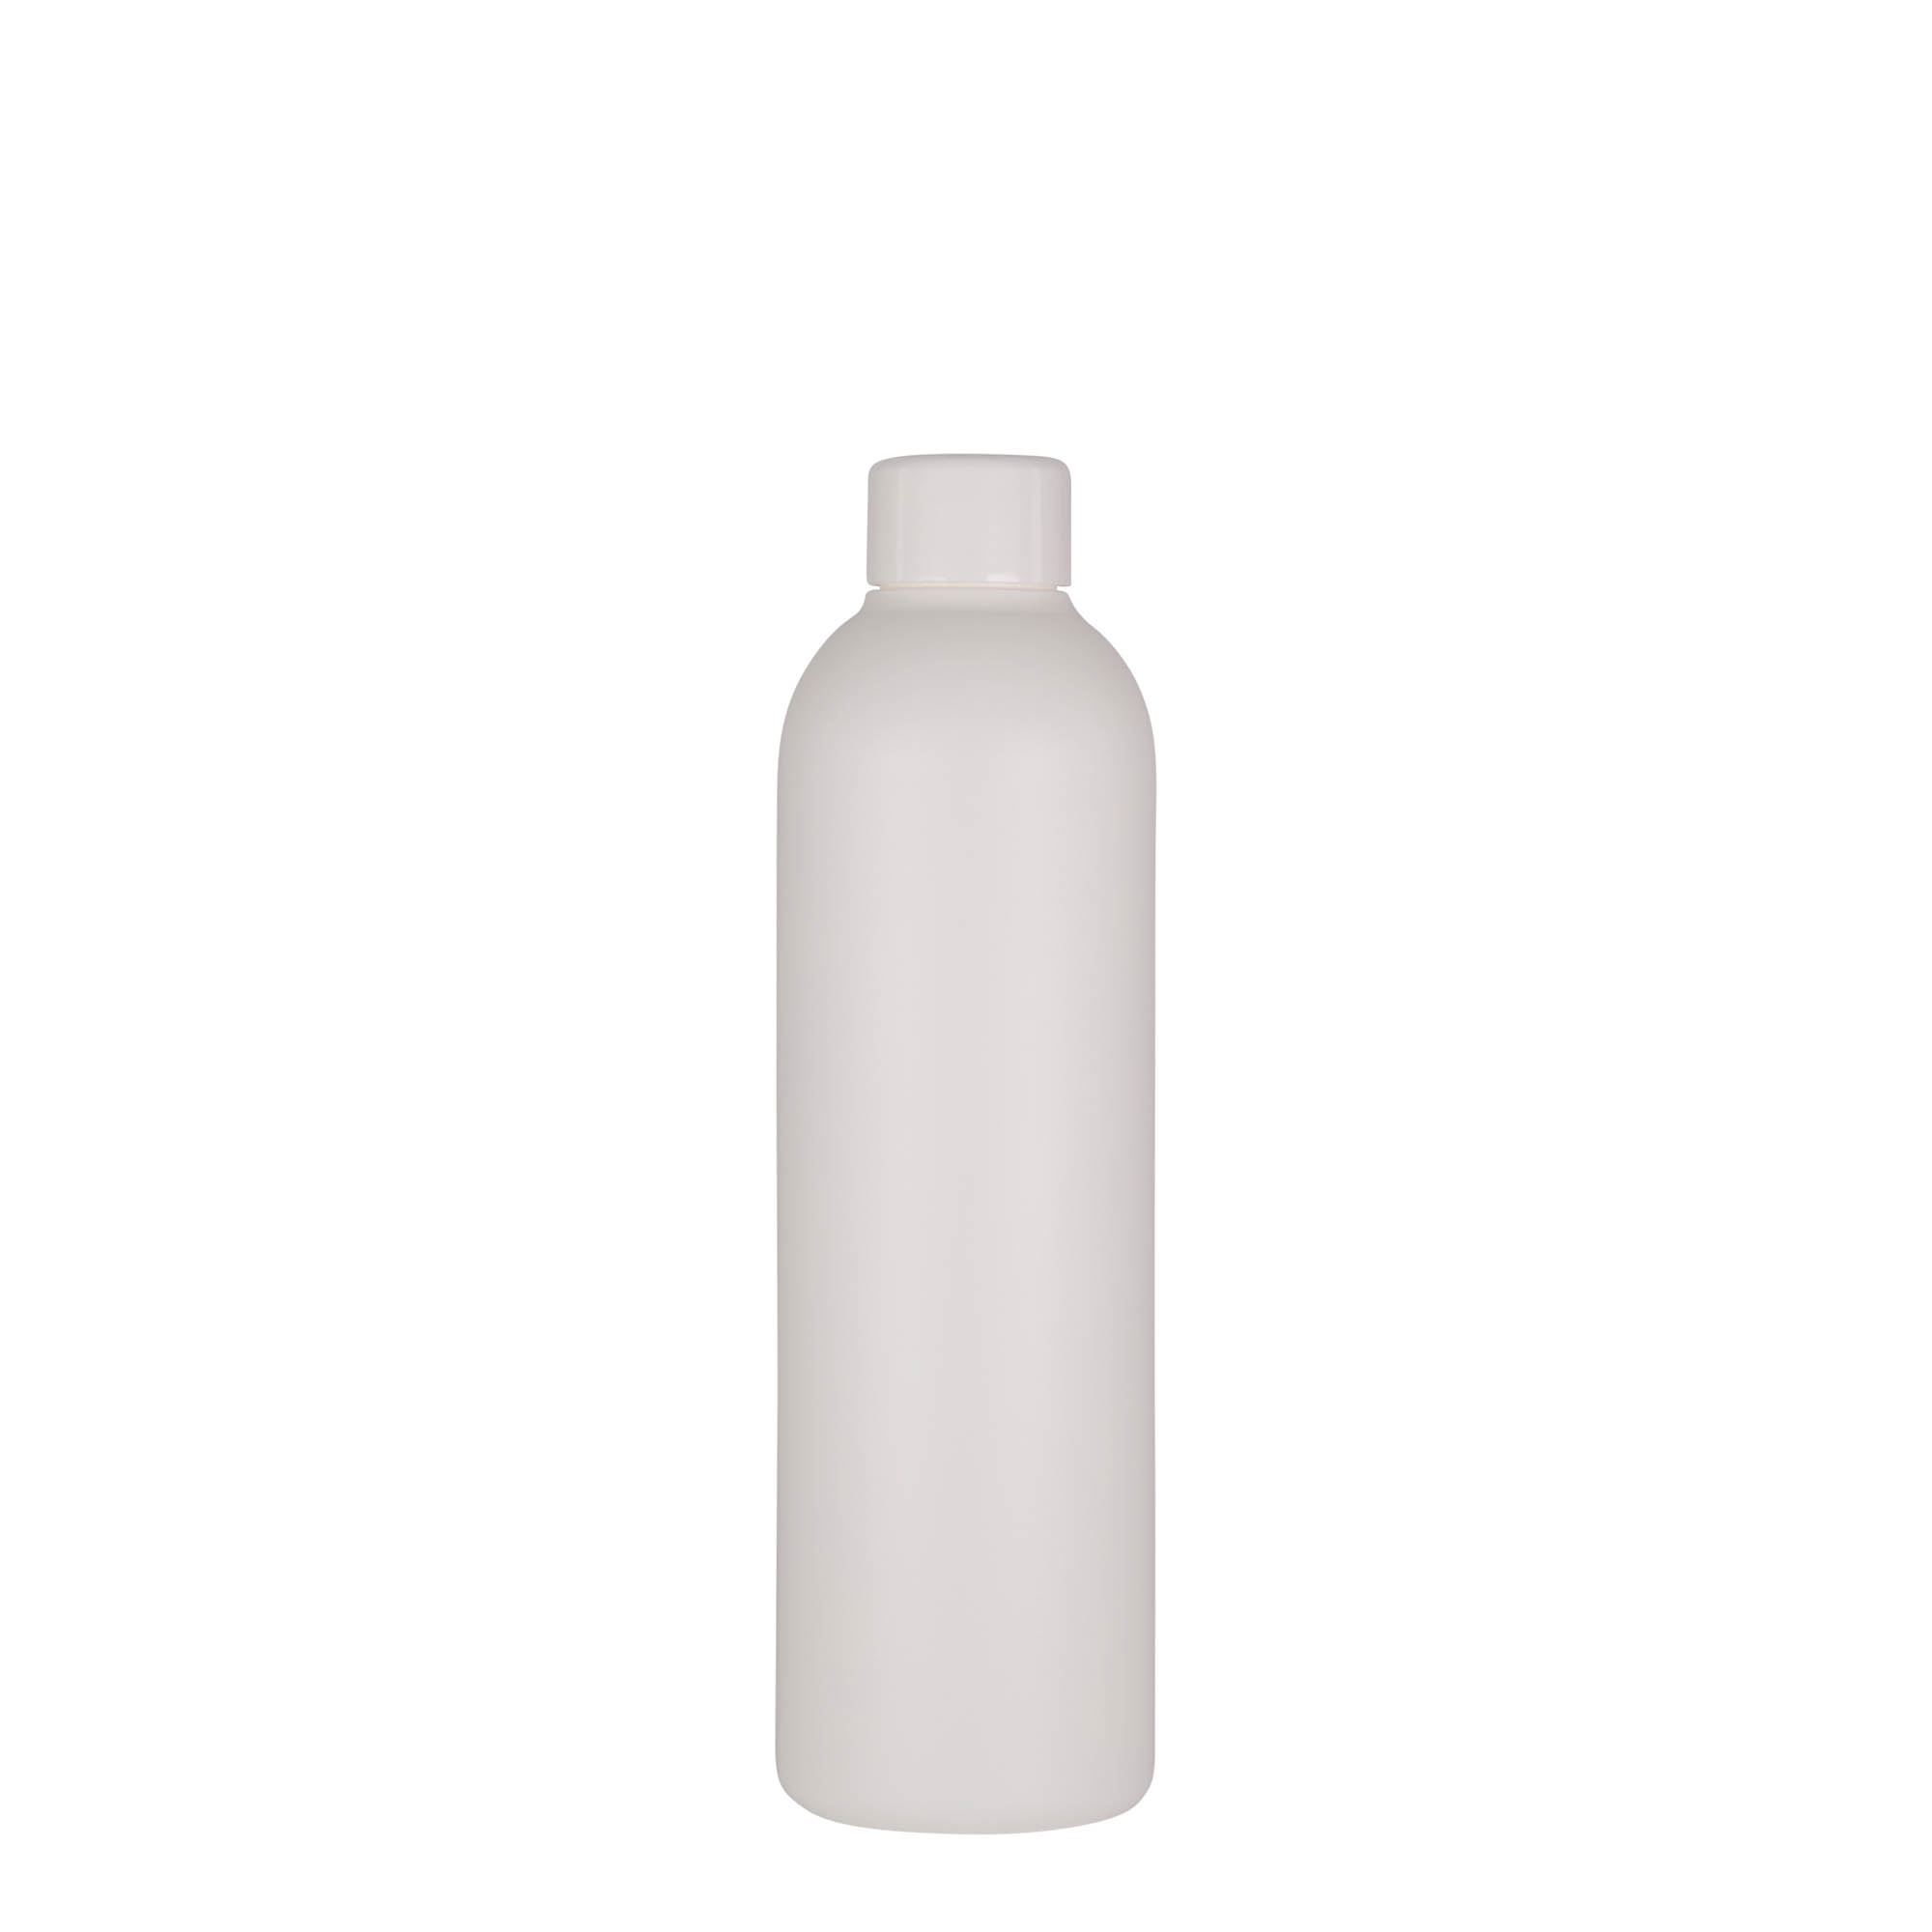 250 ml-es műanyag palack 'Tuffy', HDPE, fehér, szájnyílás: GPI 24/410